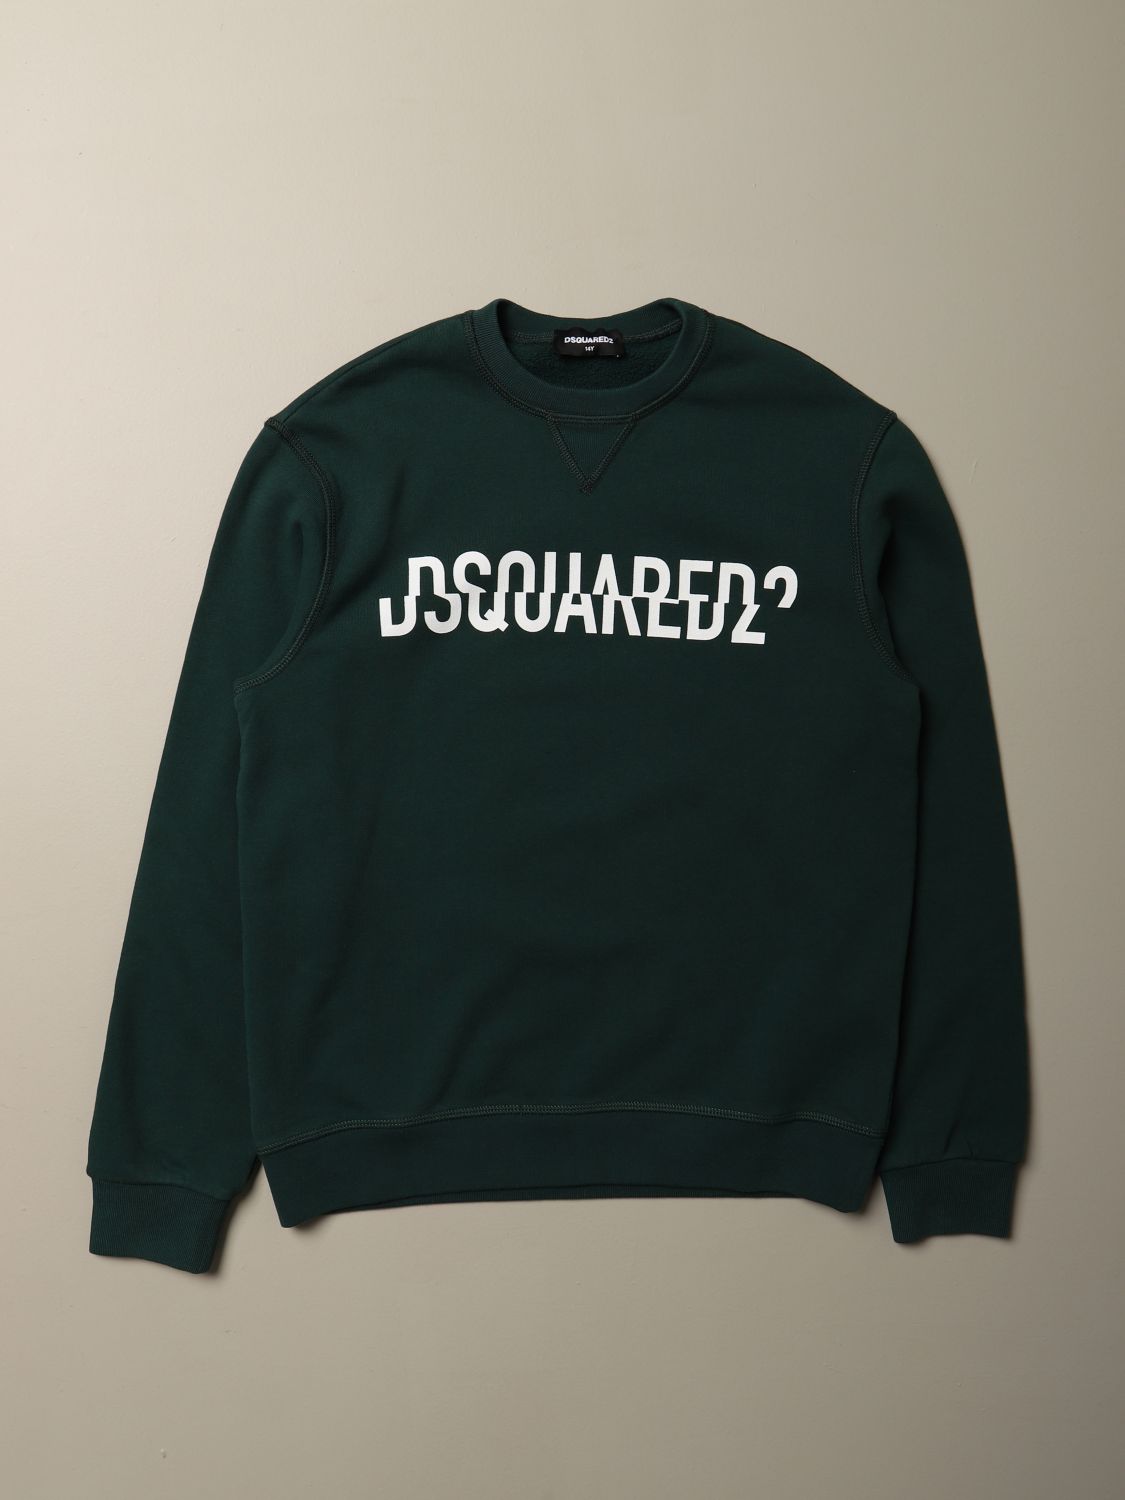 dsquared2 junior sweatshirt